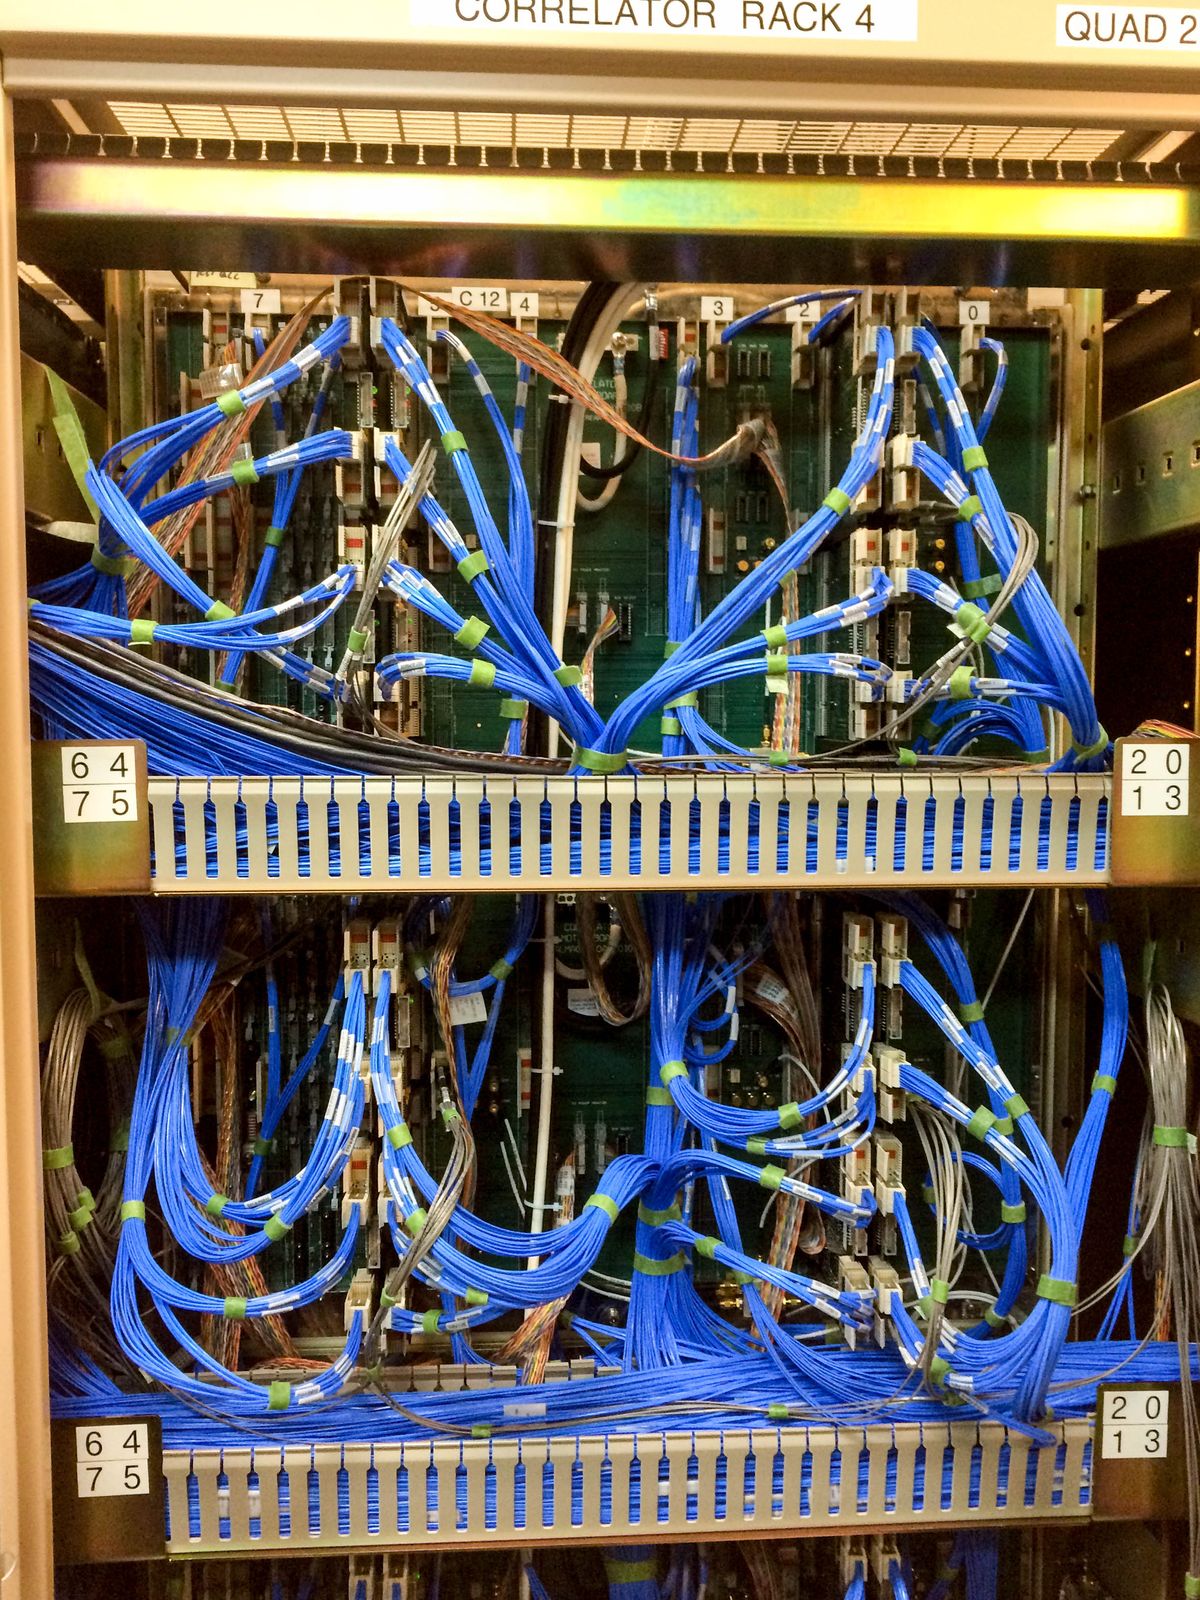 Les spaghettis bleus :) c'est ainsi que sont surnommés ces câbles. 